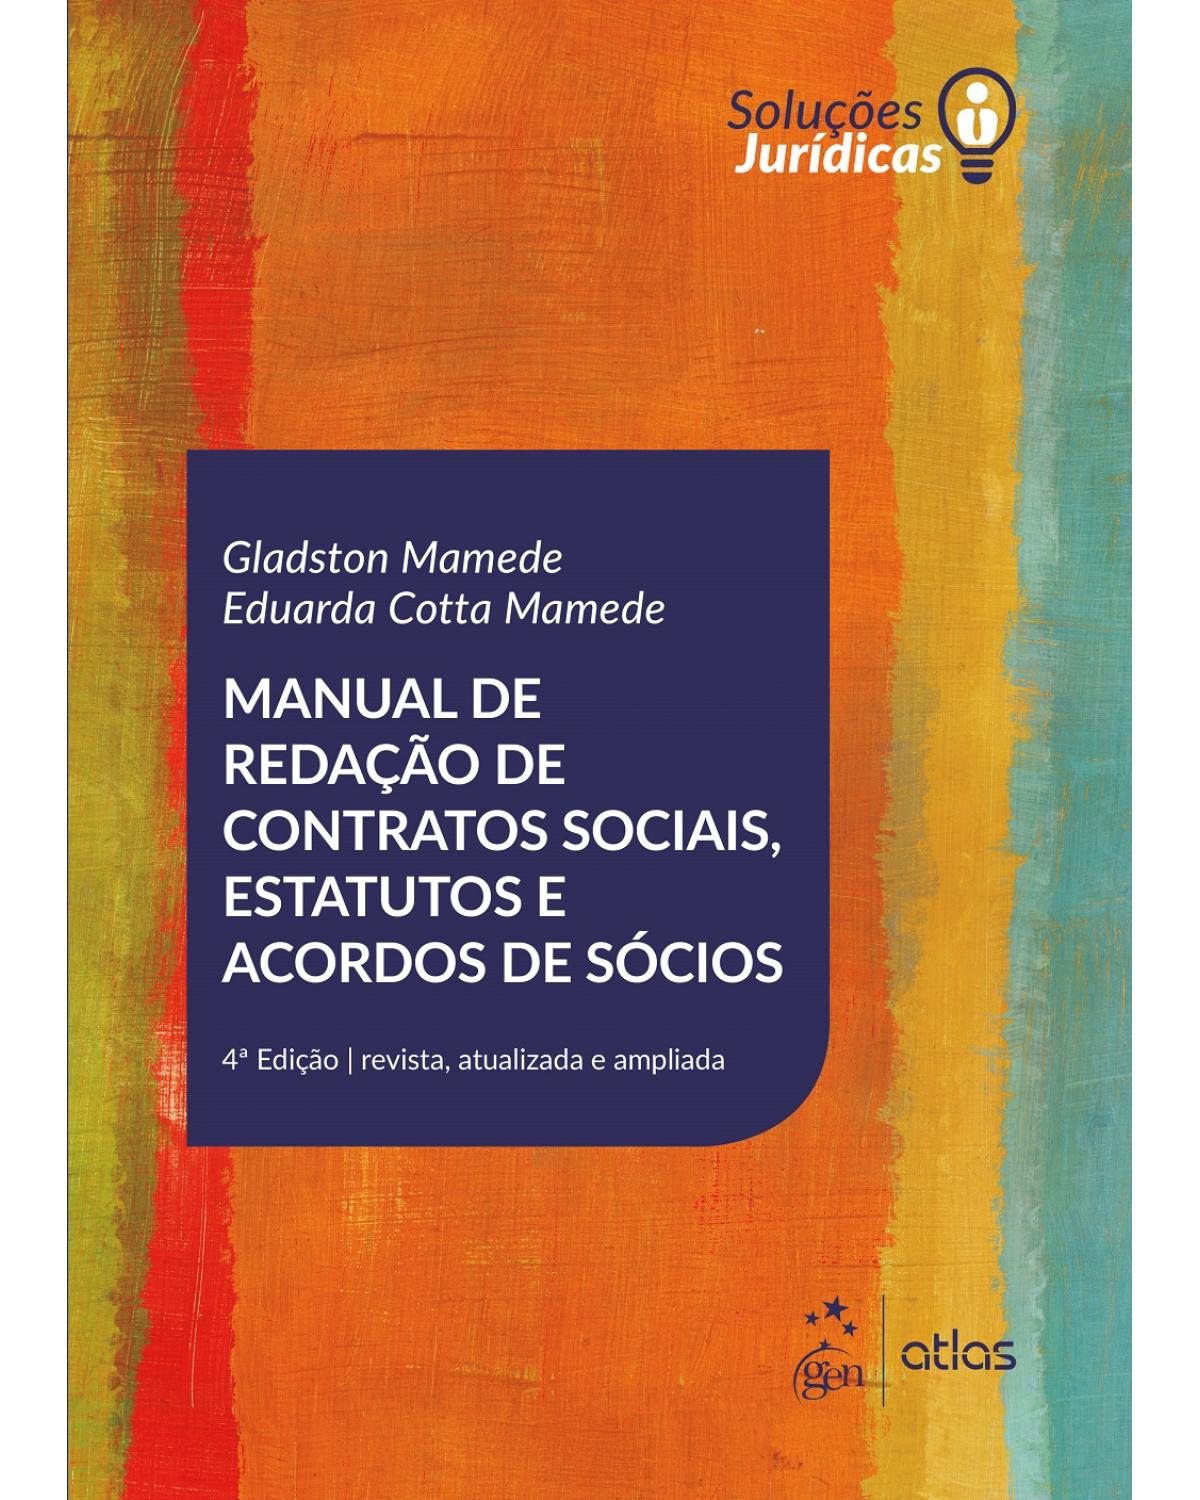 Manual de redação de contratos sociais, estatutos e acordos de sócios - 4ª Edição | 2017